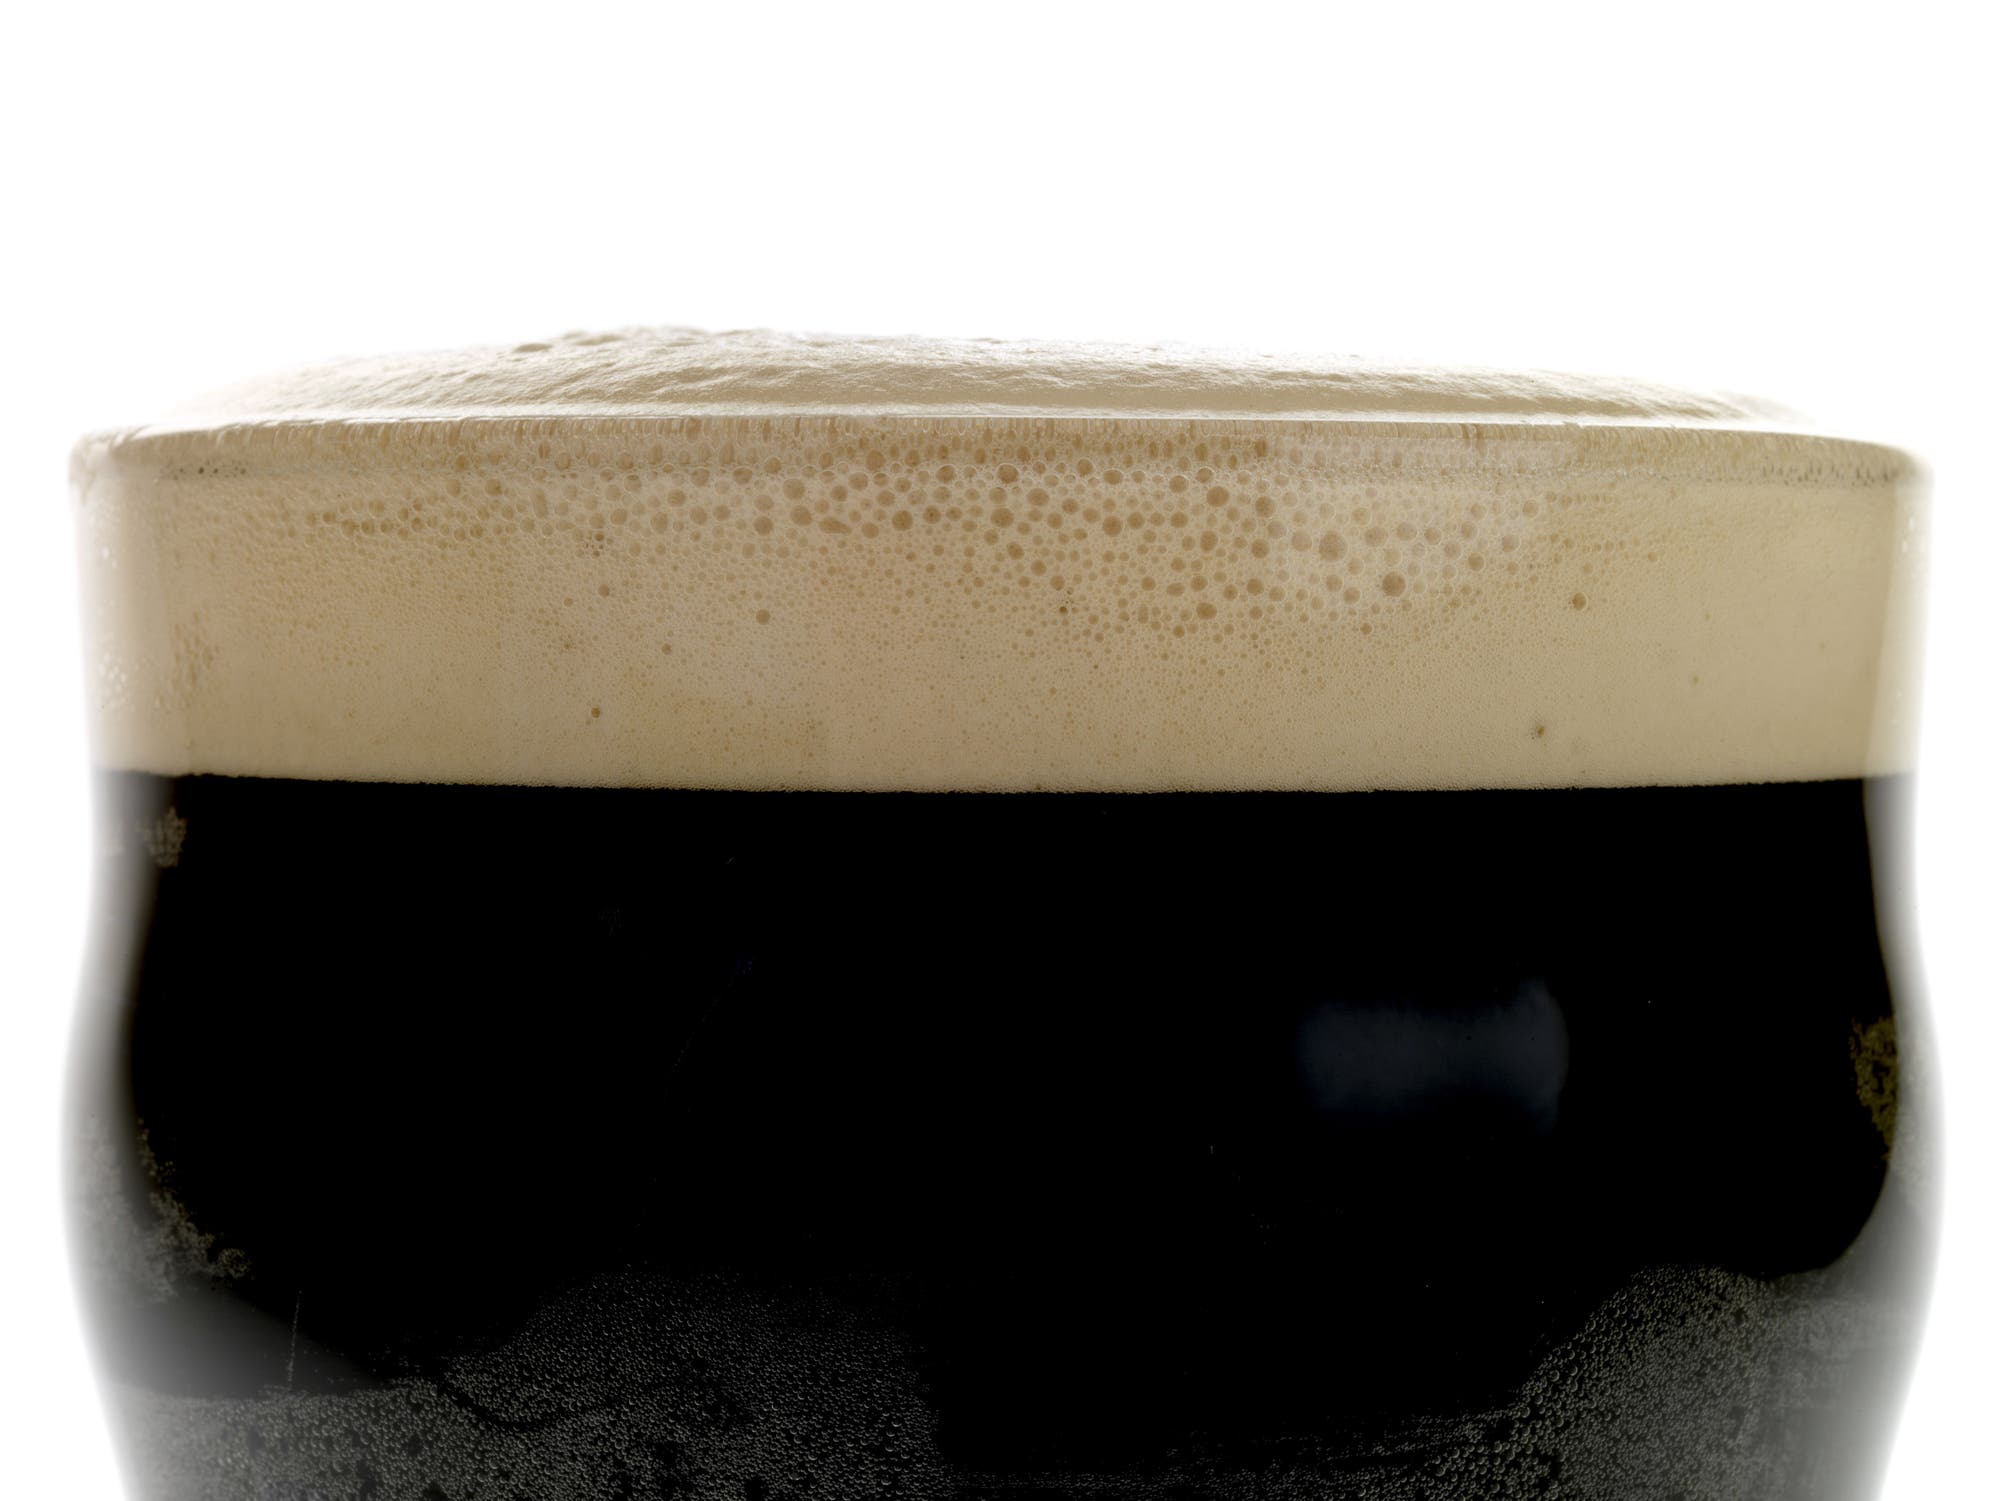 Ein Glas Guinness